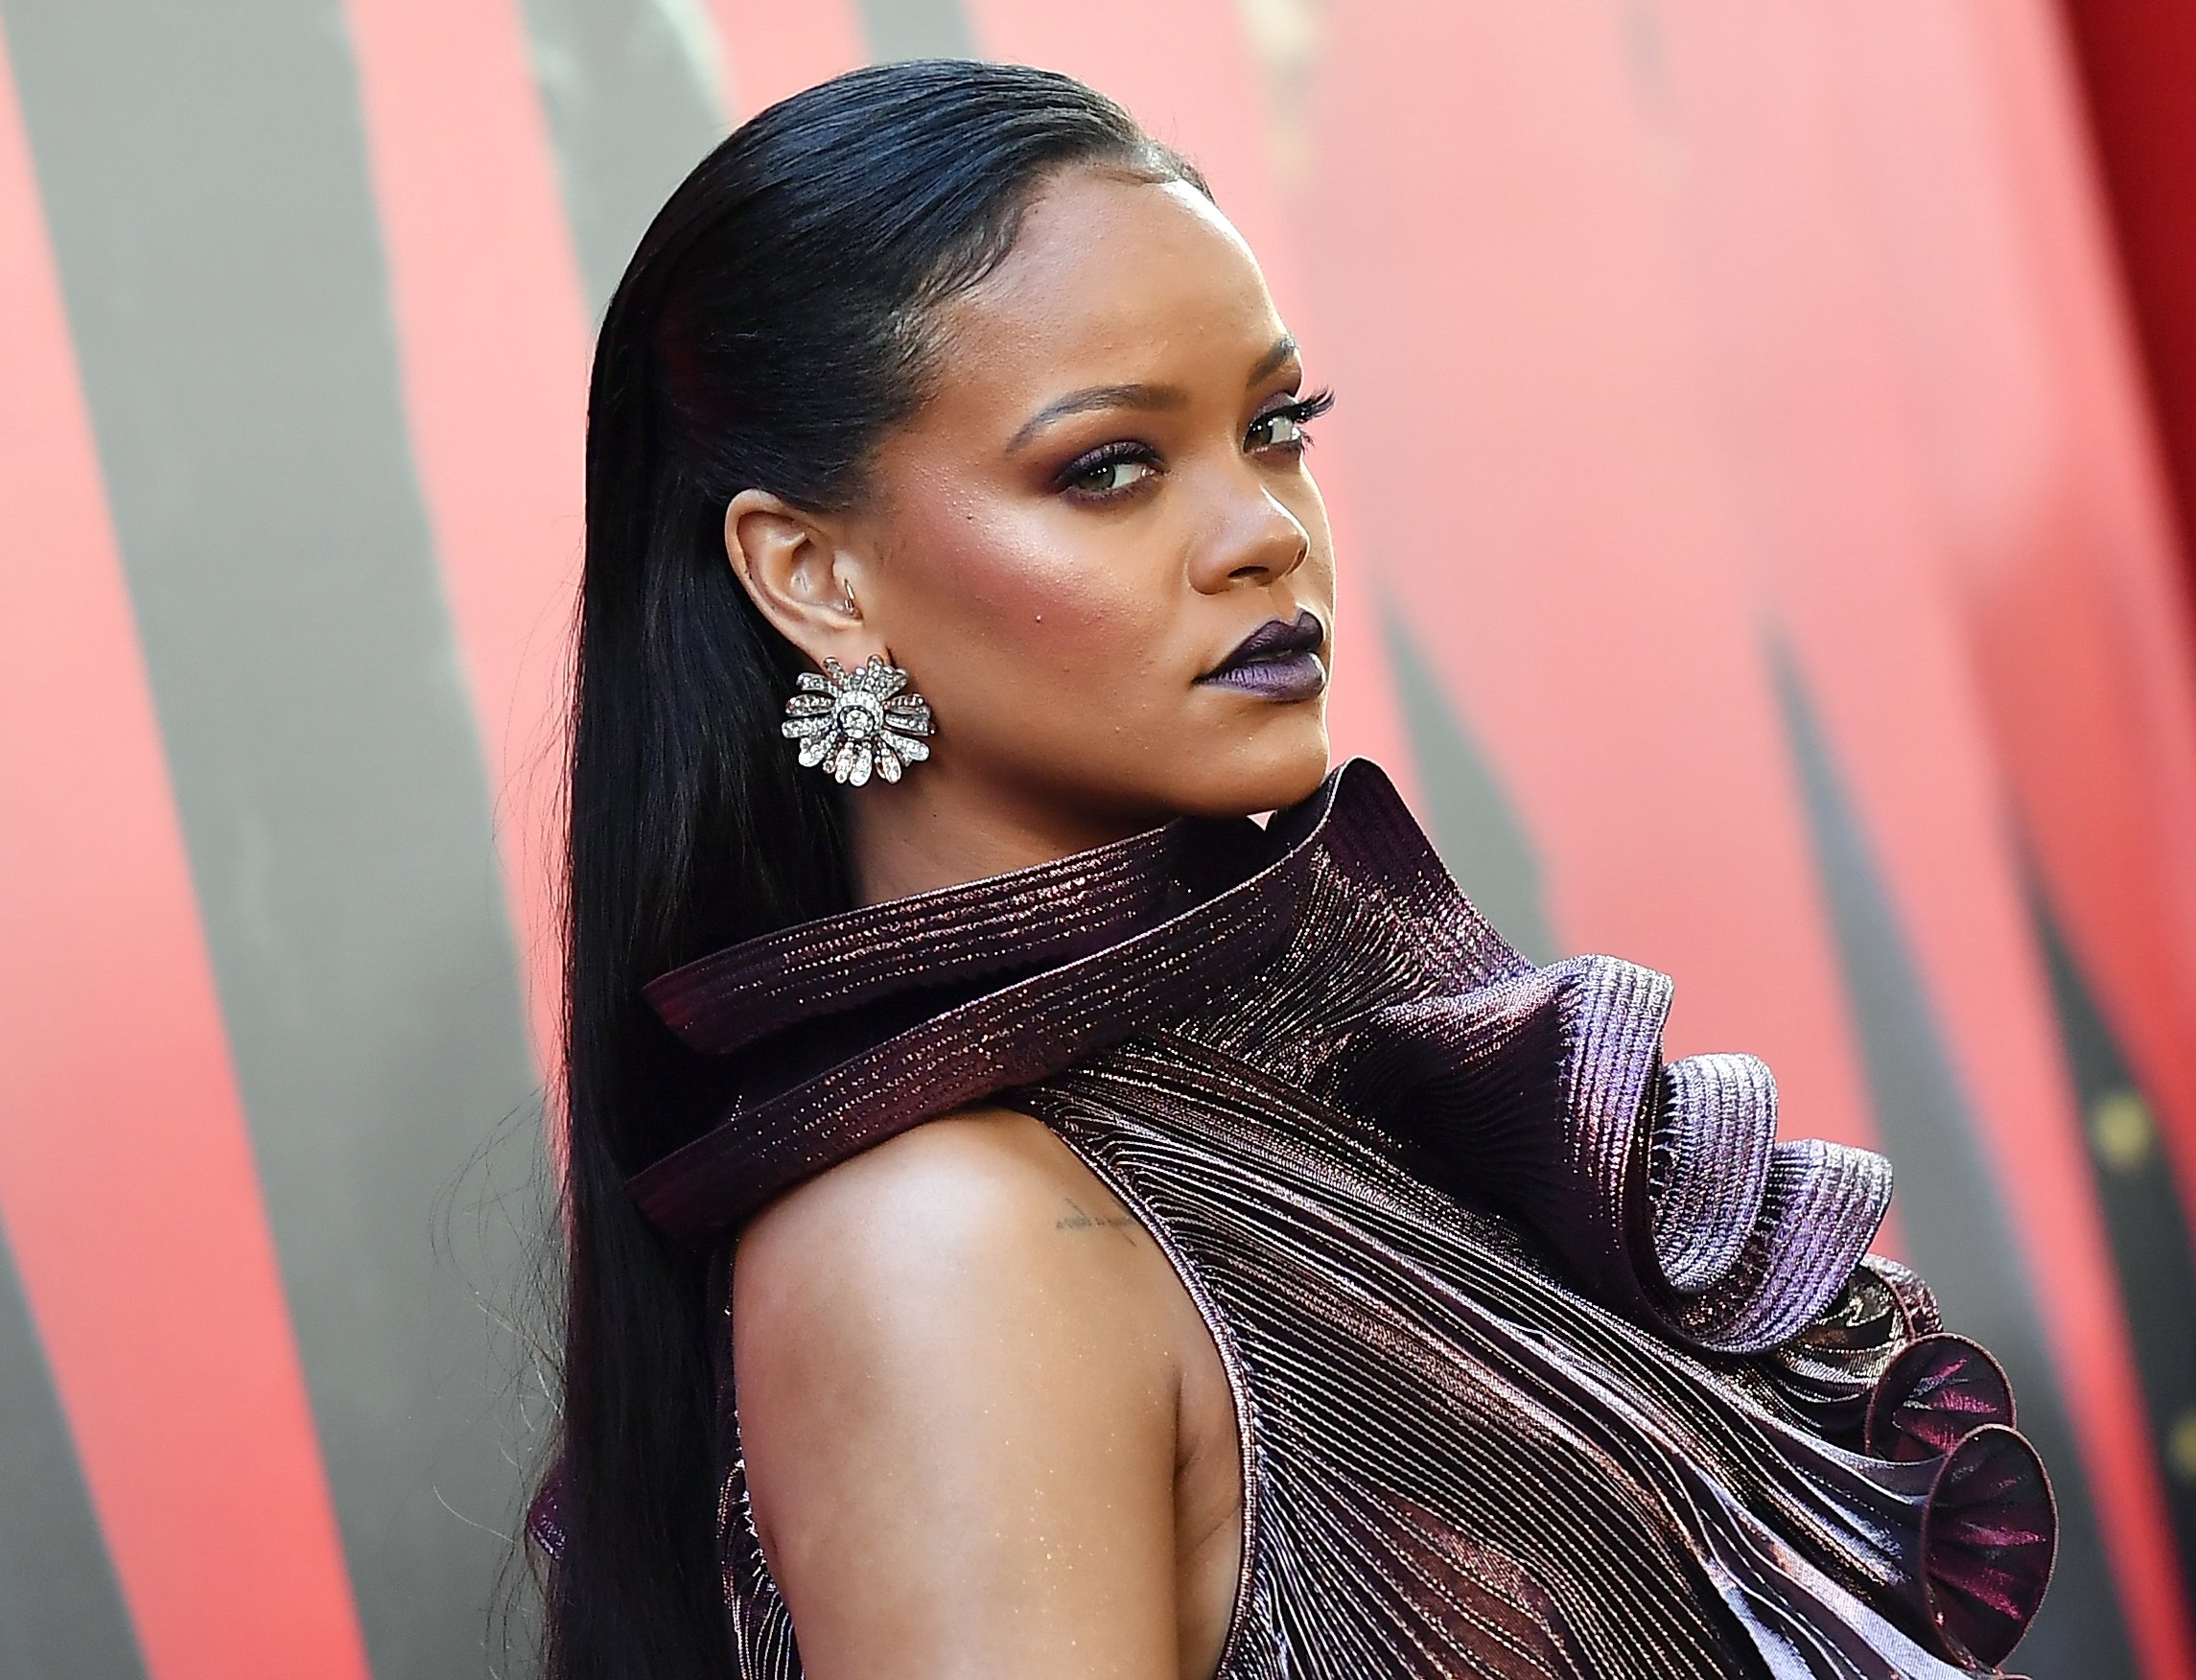 La chanteuse/actrice Rihanna assiste à la première mondiale d'OCEANS 8 le 5 juin 2018 à New York.